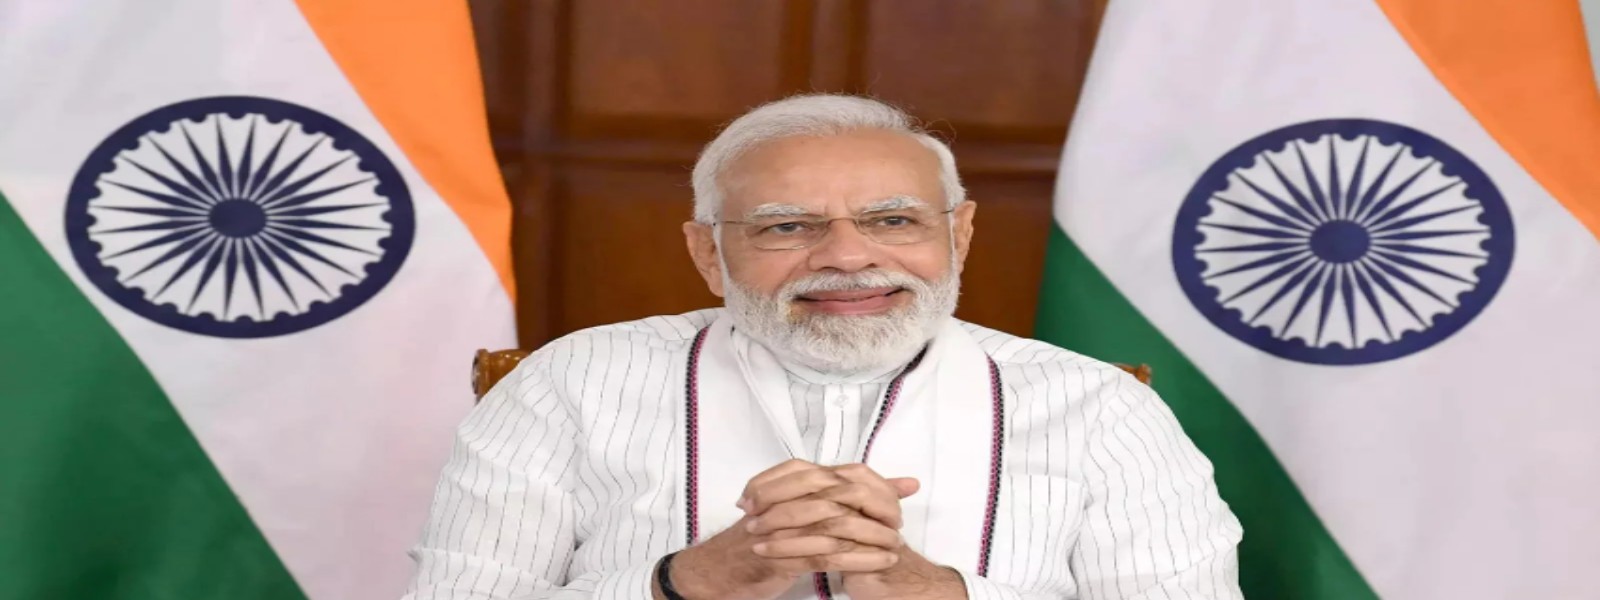 Modi assures PM Gunawardena of unwavering support